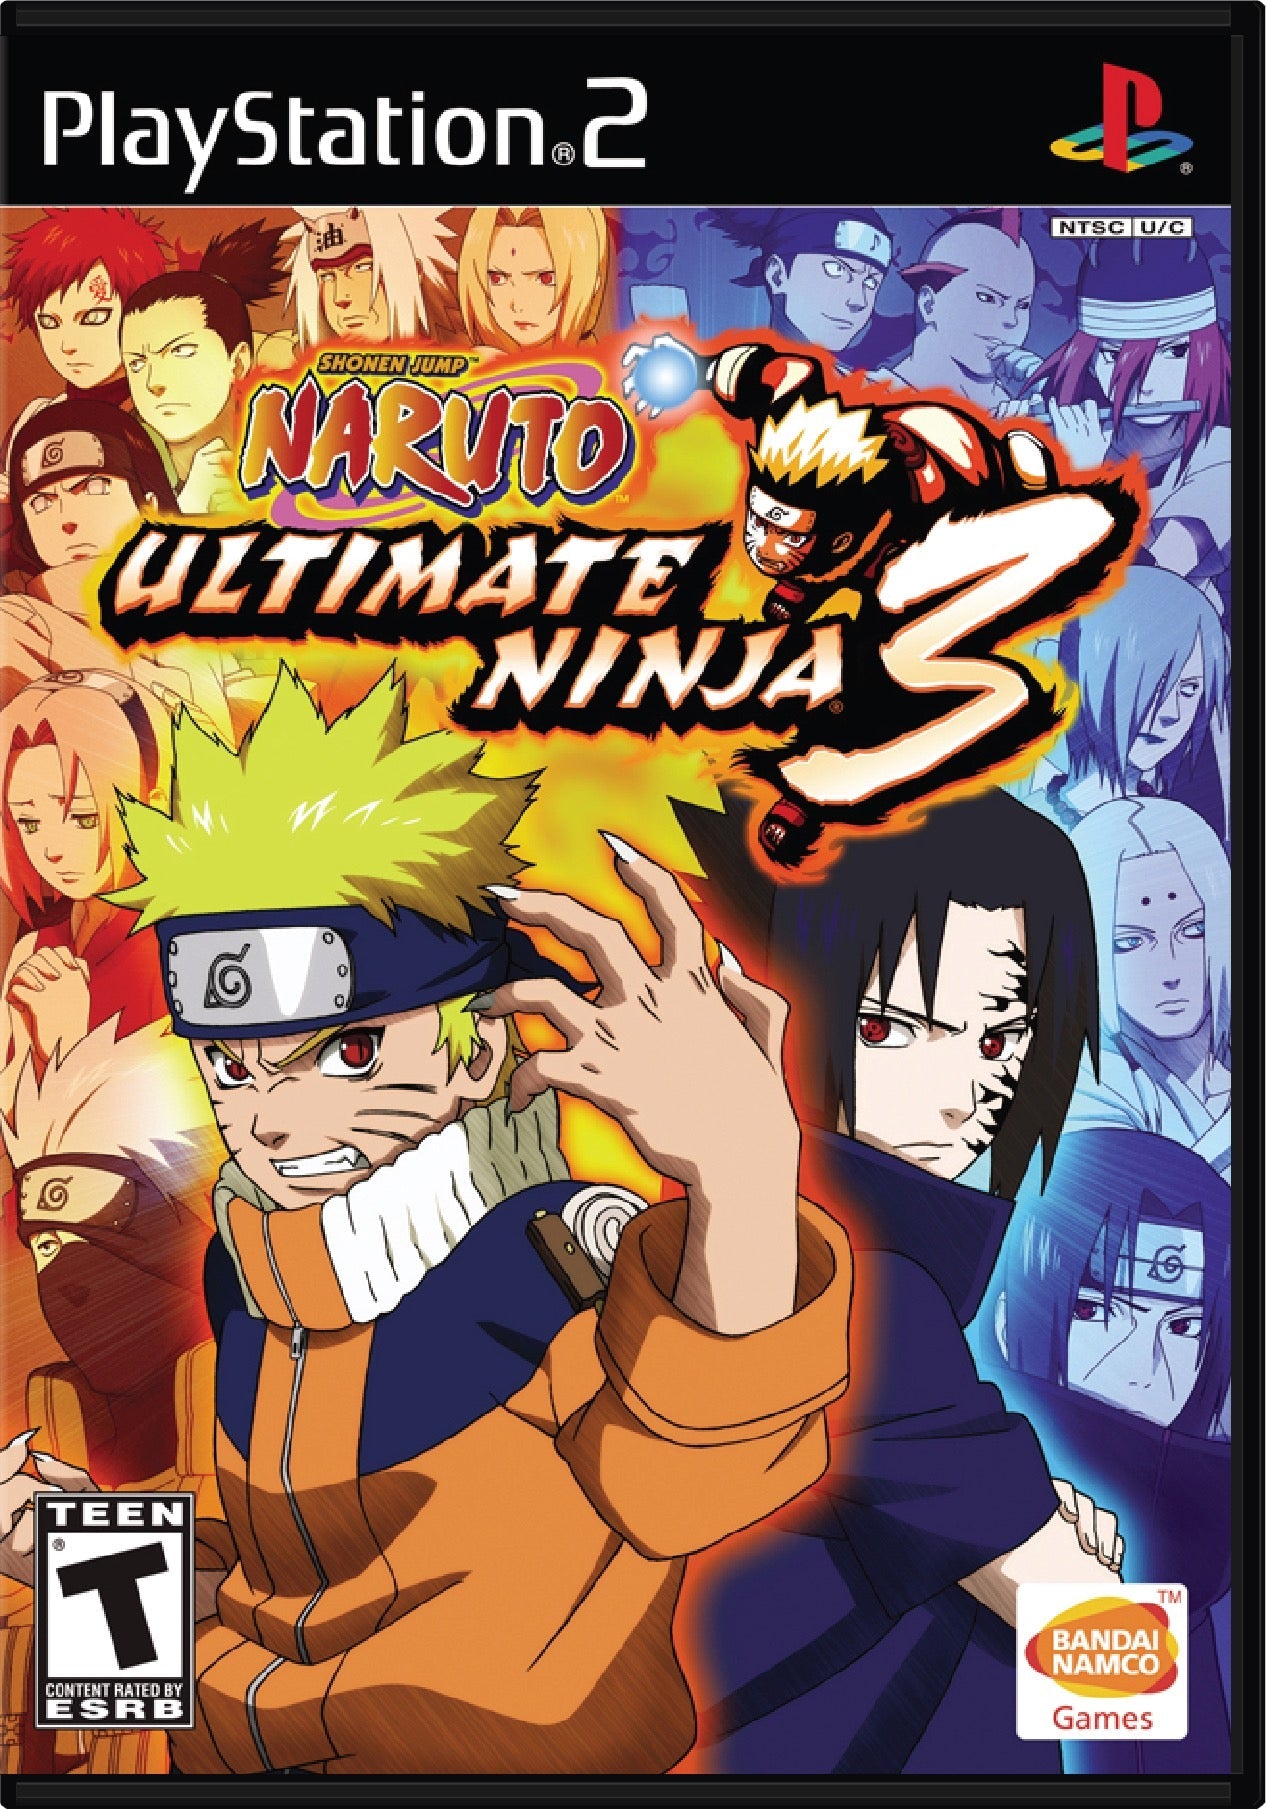 Naruto Ultimate Ninja 3 Cover Art and Product Photo